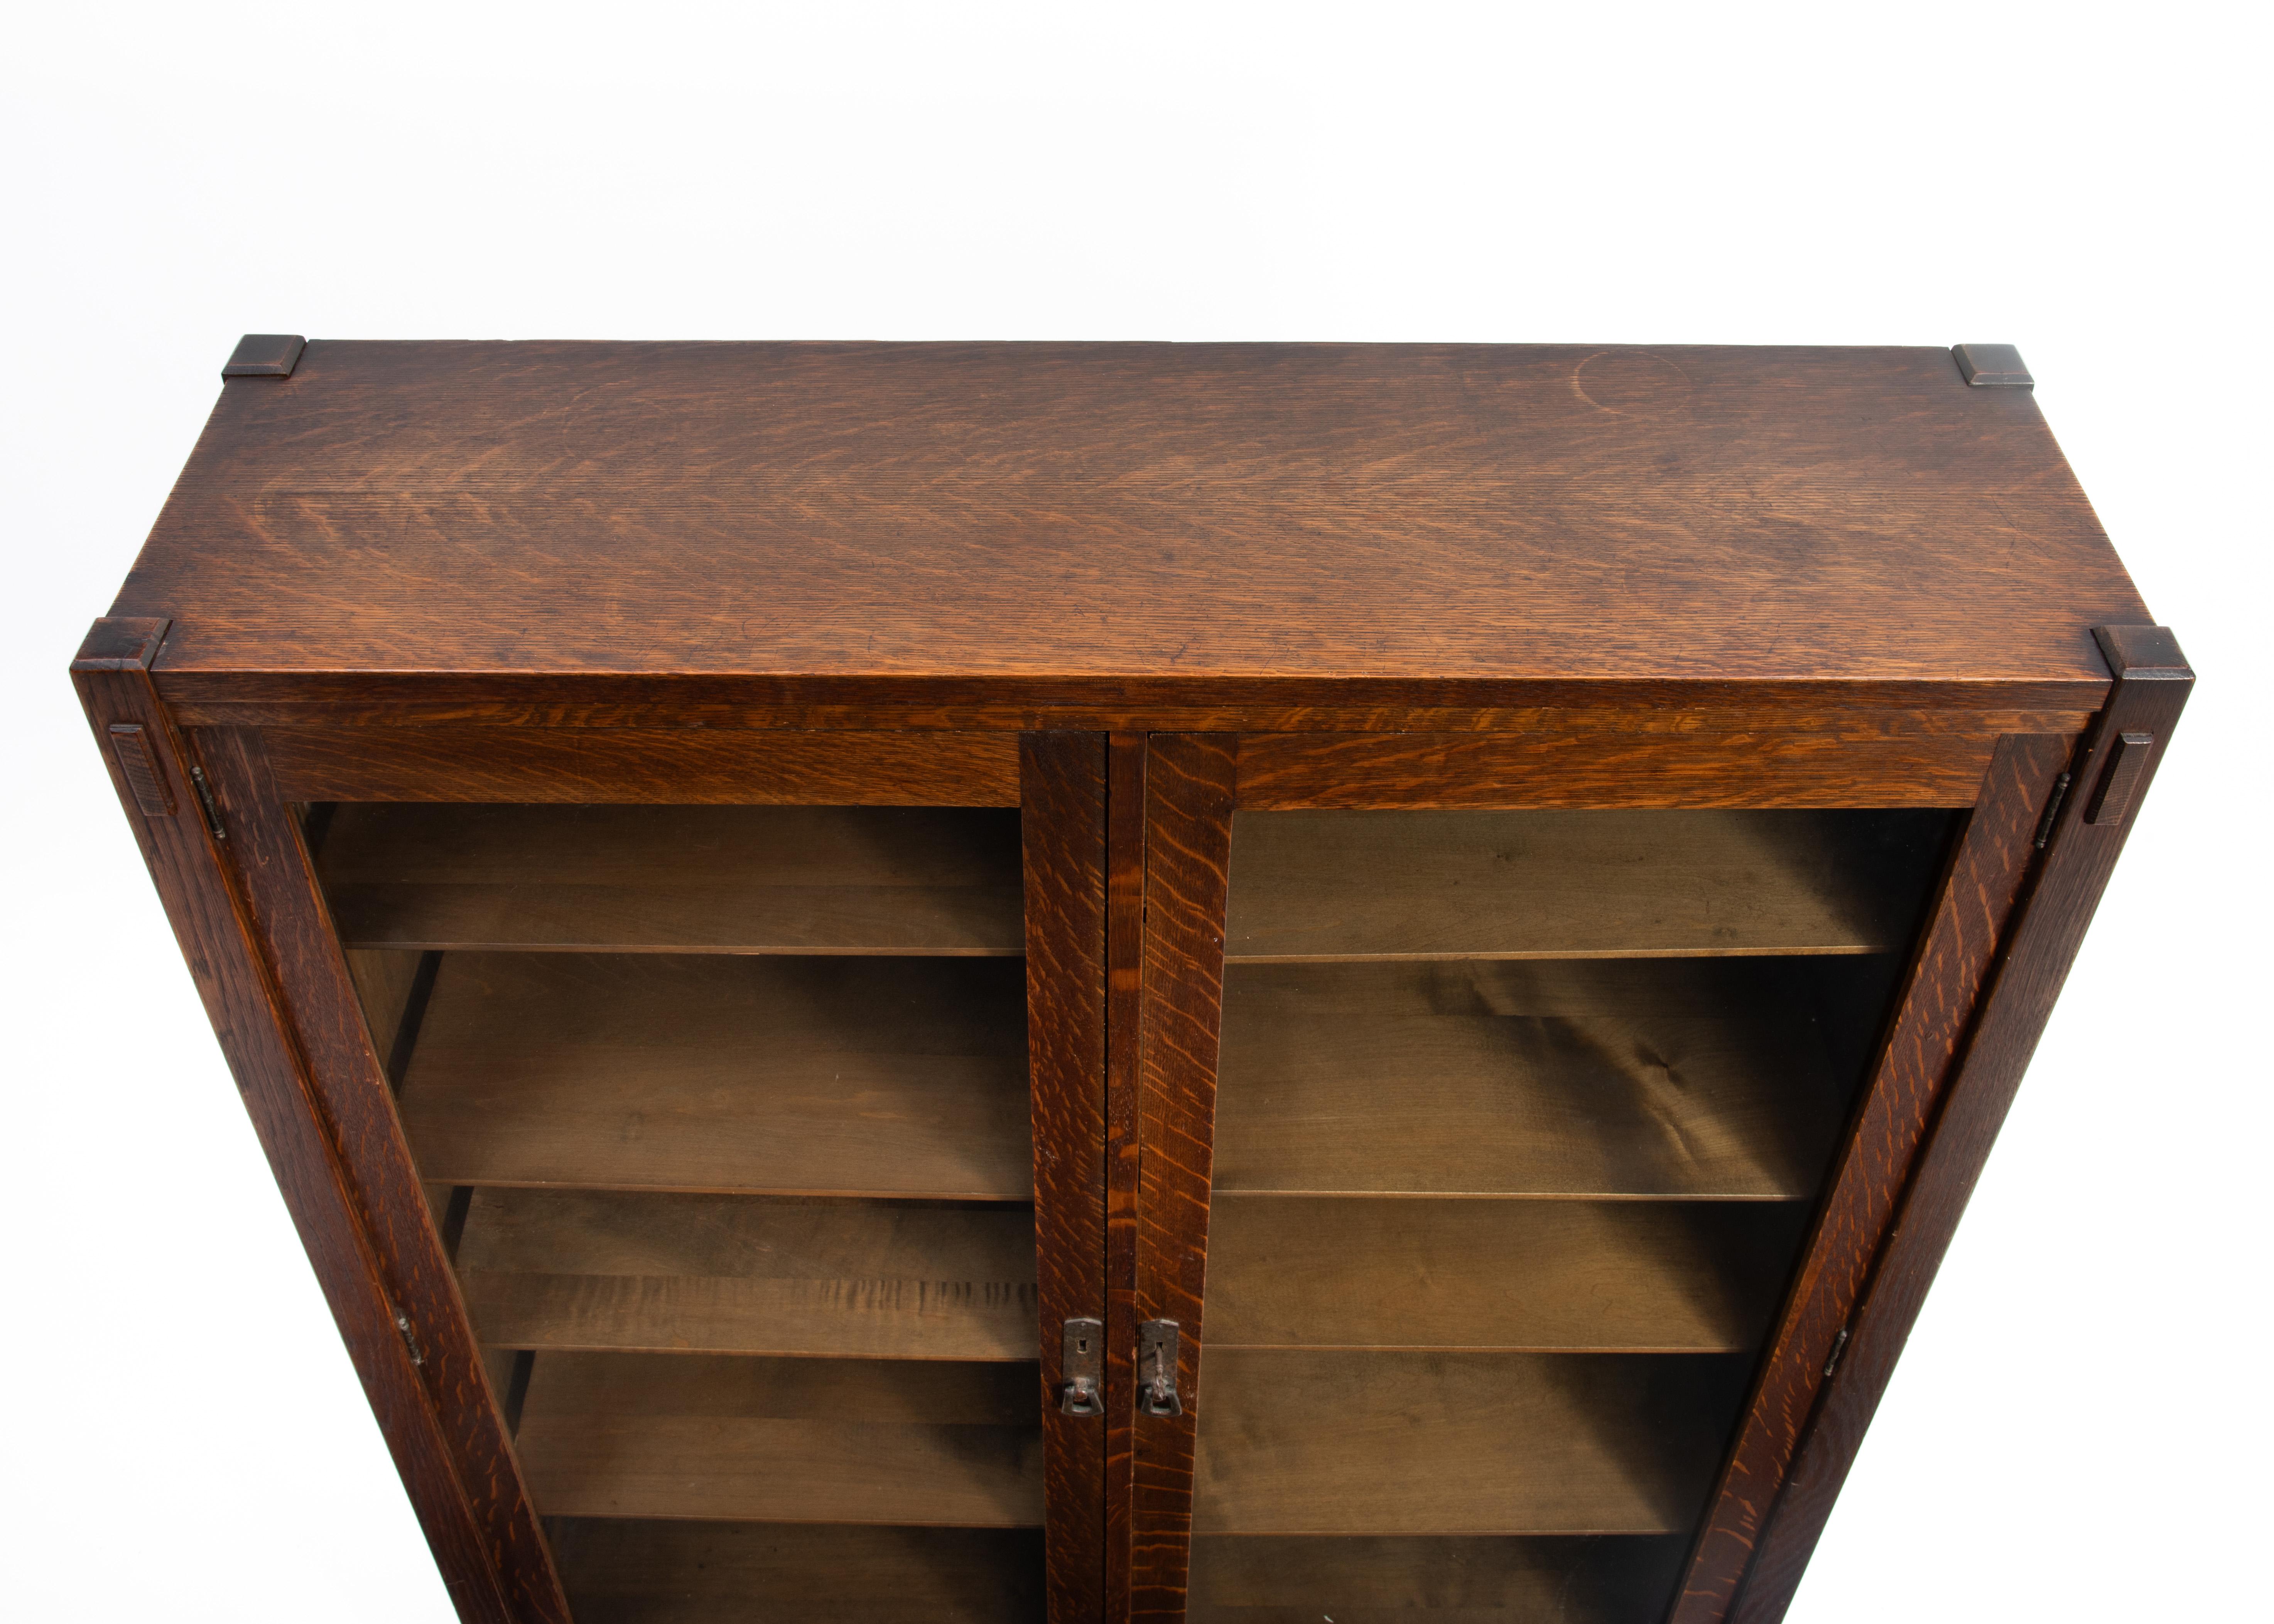 Copper Lifetime Arts & Crafts Mission Oak Bookcase Pegged Through Tenon Original Finish For Sale